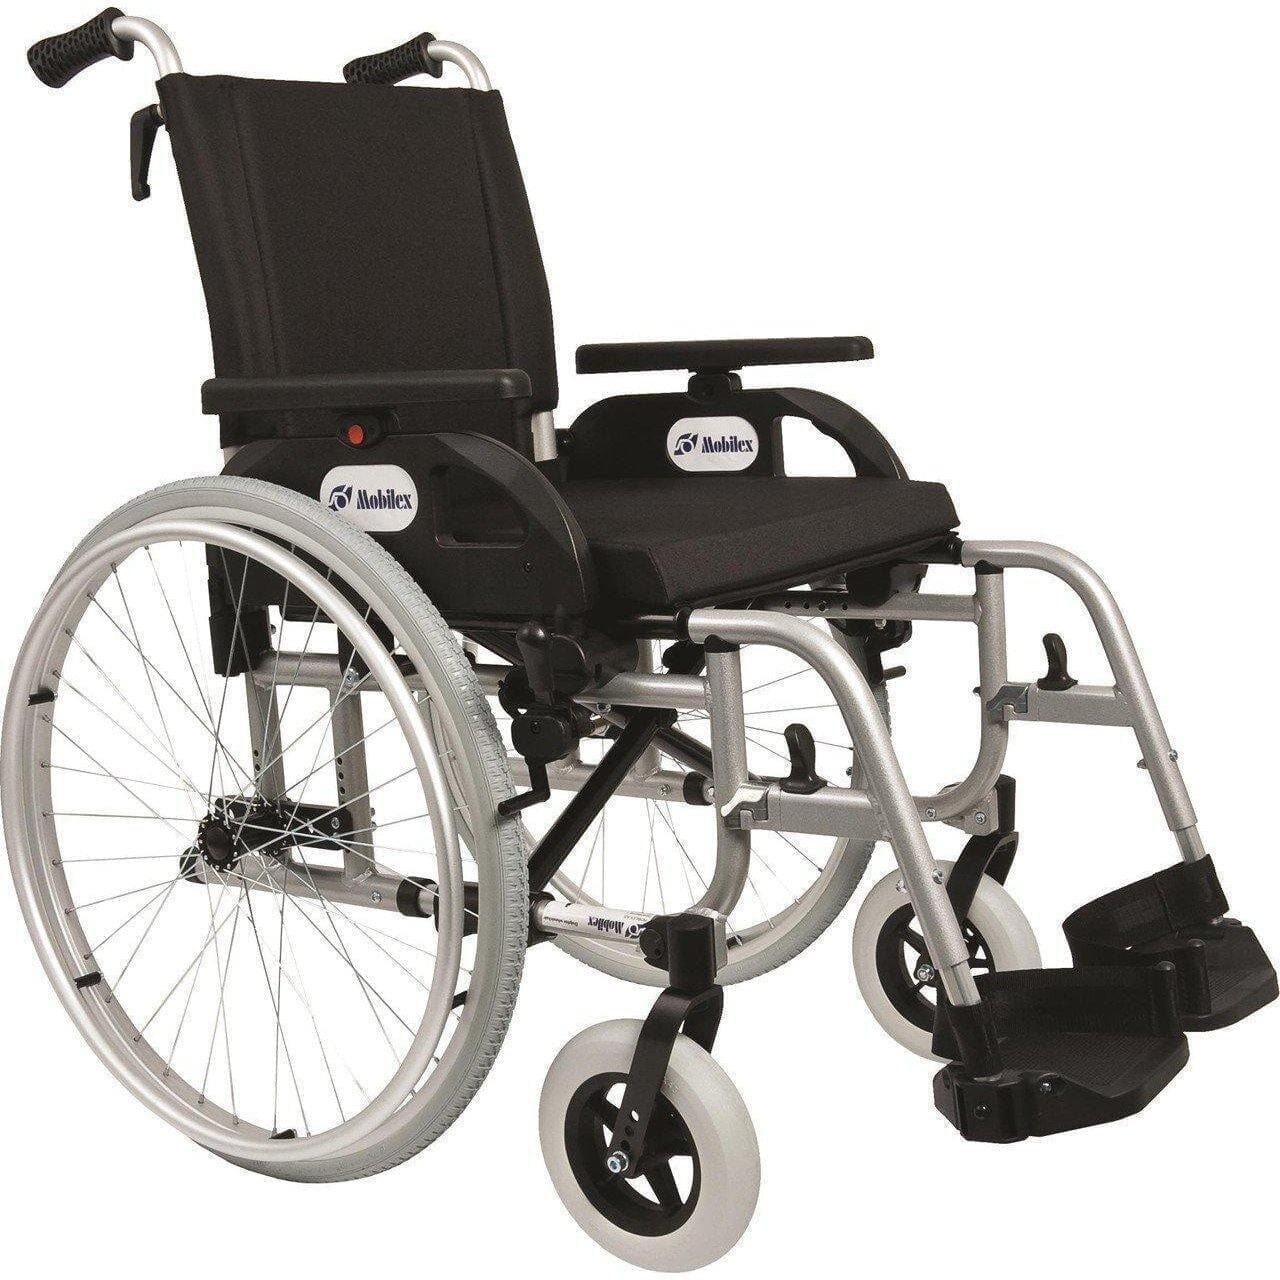 Billede af DOLPHIN -Letvægts kørestol. Luksus model. 4 slags sædebredder. 2 typer, 40 cm.